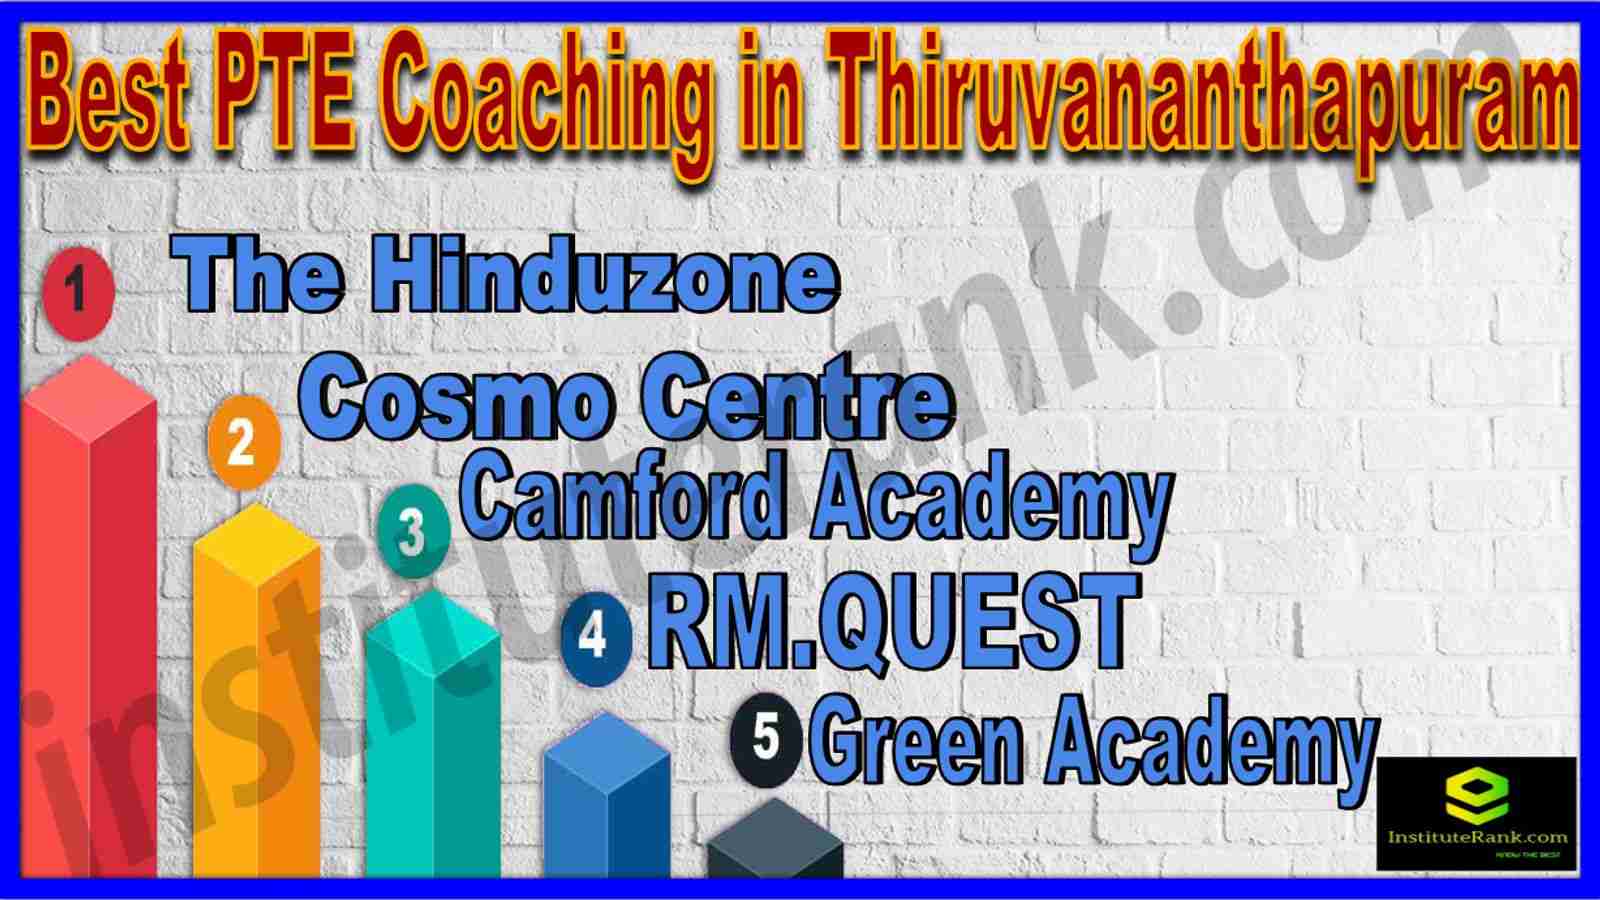 Best PTE Coaching in Thiruvananthapuram